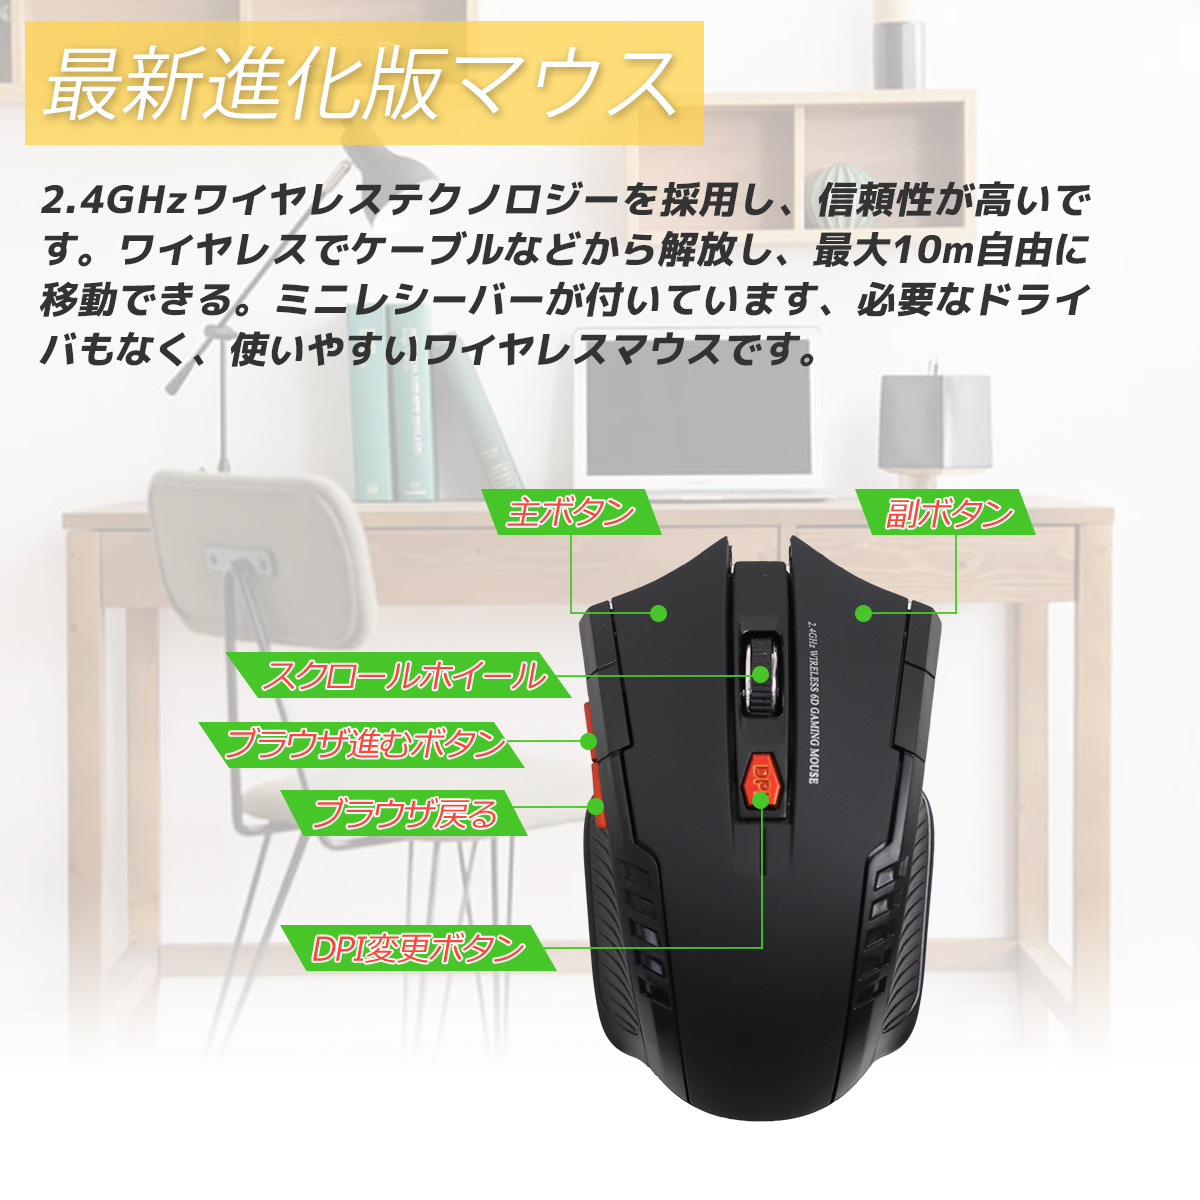 楽天市場 定形外郵便 光学式ワイヤレスマウス 2 4ghz 6ボタン カラー選択 黒 赤 青 Gaming Mouse パワーゲイザー 無線 Usb 小型 軽量 Gl楽天市場店